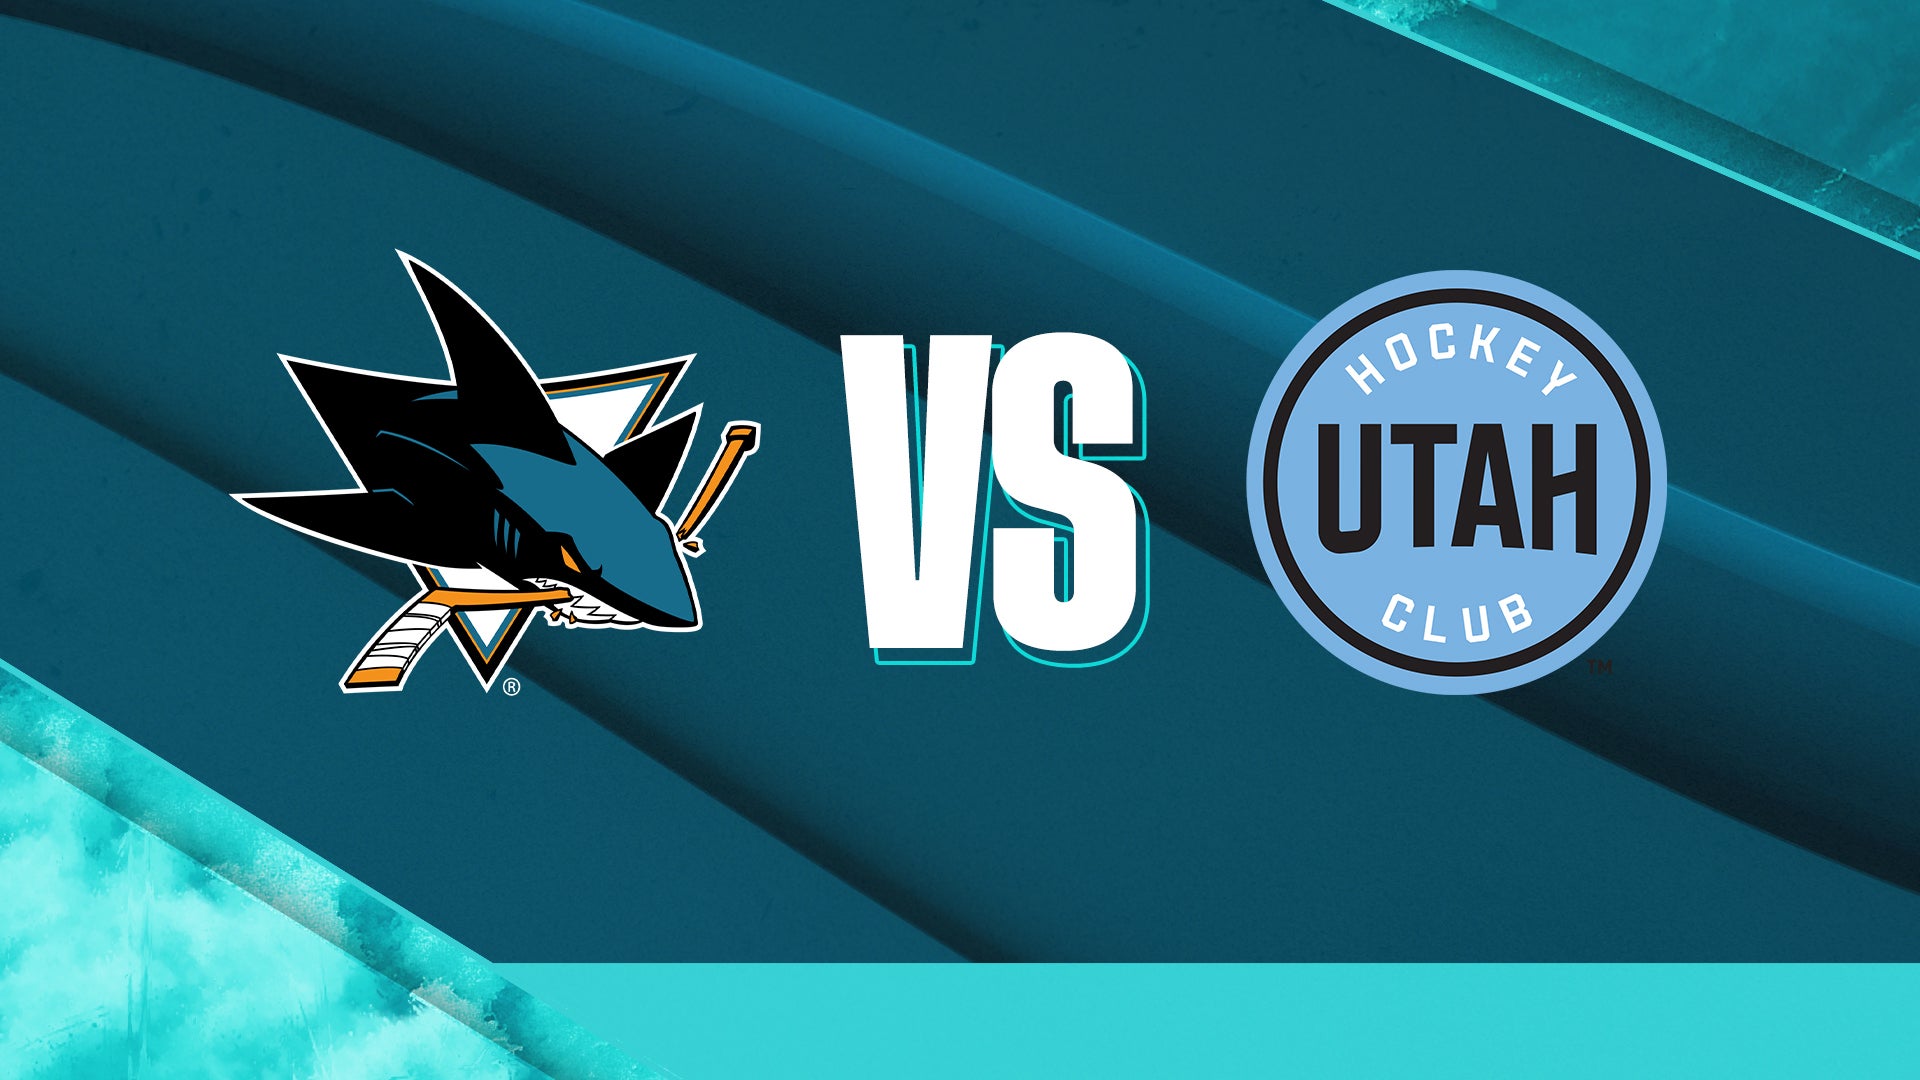 San Jose Sharks vs. Utah Hockey Club